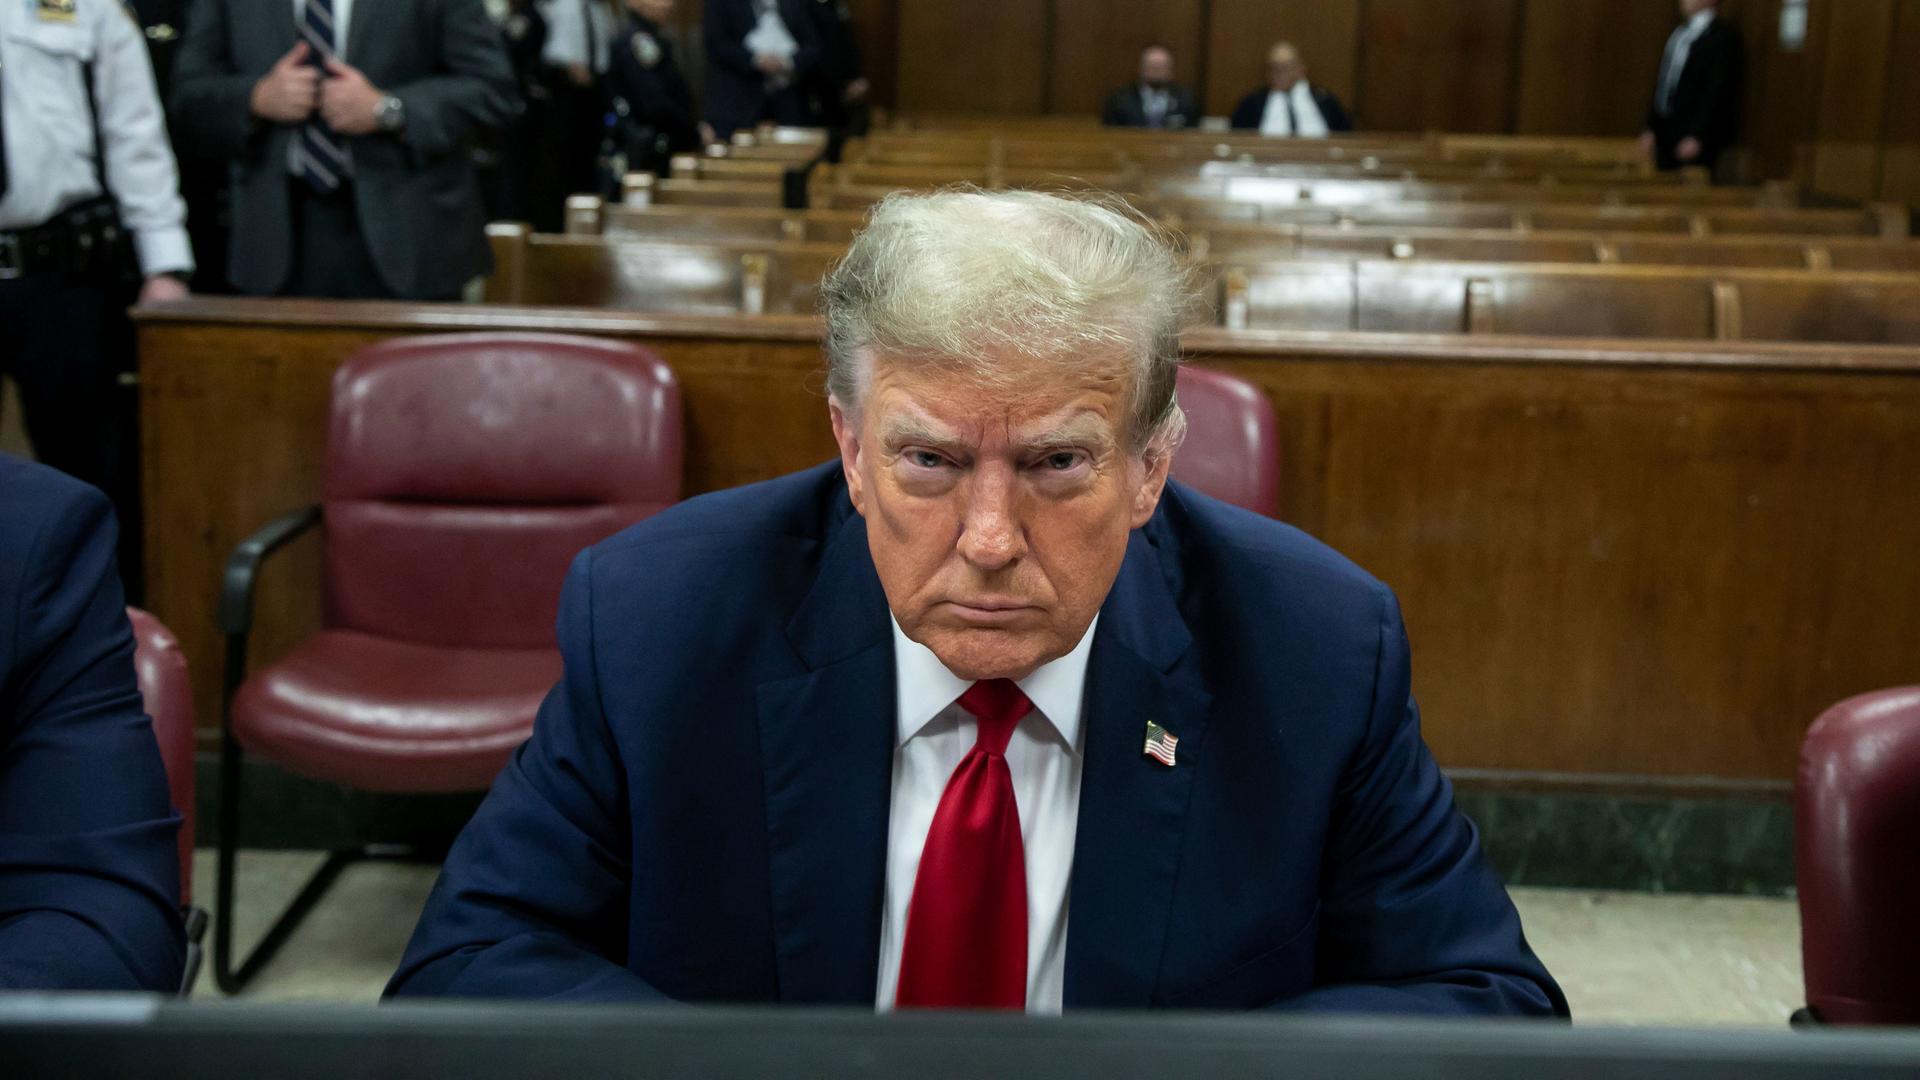 Der ehemalige US-Präsident Donald Trump sitzt in einem Gerichtssaal und blickt finster in die Kamera. 